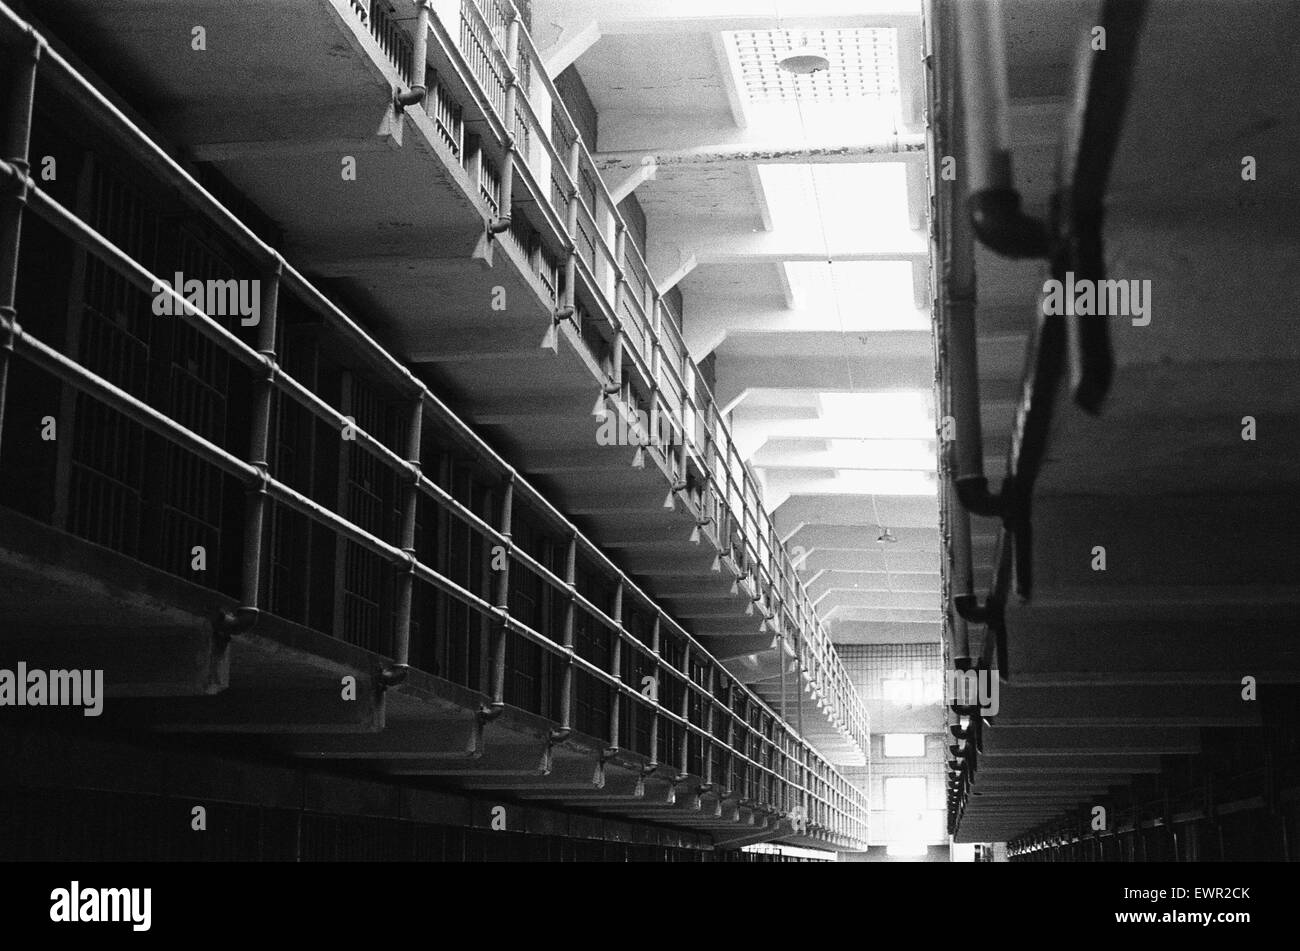 Intérieur d'un bloc de cellules dans la prison d'Alcatraz, San Francisco Bay. Septembre 1979 La prison a été construit par l'armée américaine en 1910 et remis au ministère de la Justice des États-Unis le 12 octobre 1933 comme une prison de haute sécurité. Compte tenu de la locat Banque D'Images